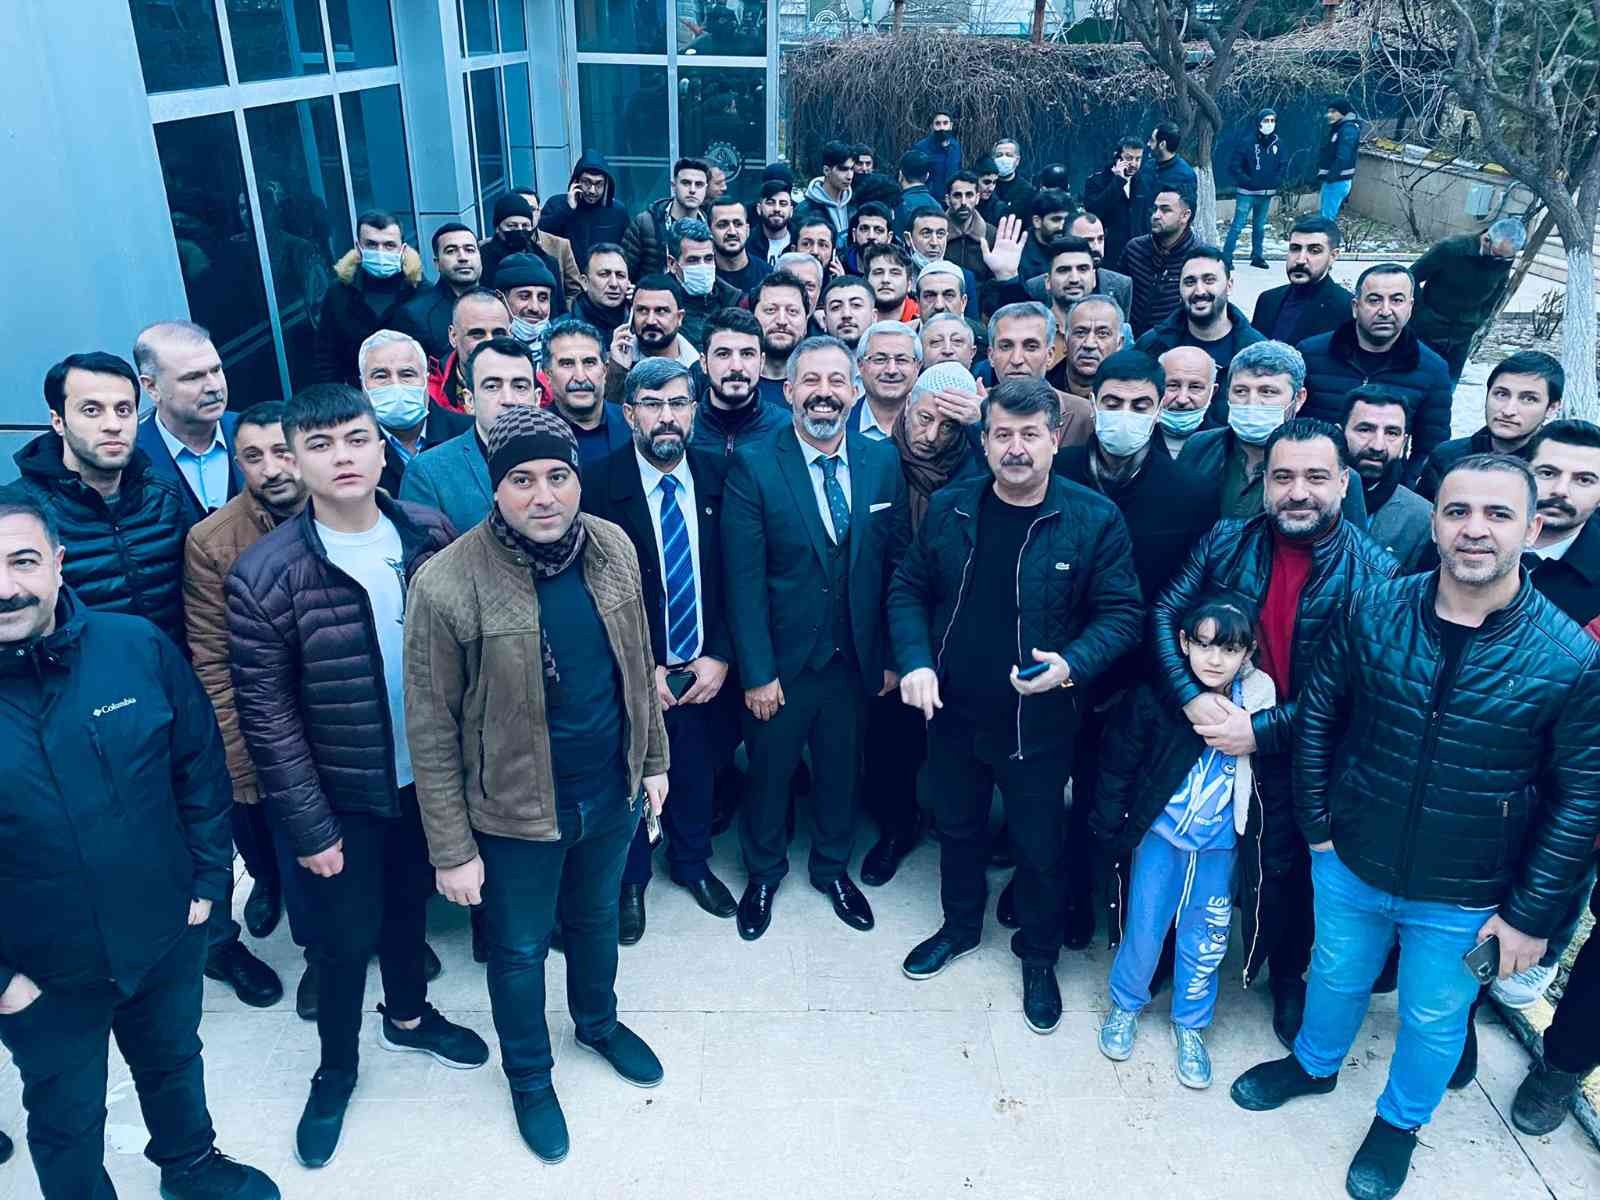 Hayvansever kimliğiyle tanınan Yüksel, Diyarbakır Kuyumcular ve Sarraflar Odası’nın başkanı seçildi #diyarbakir